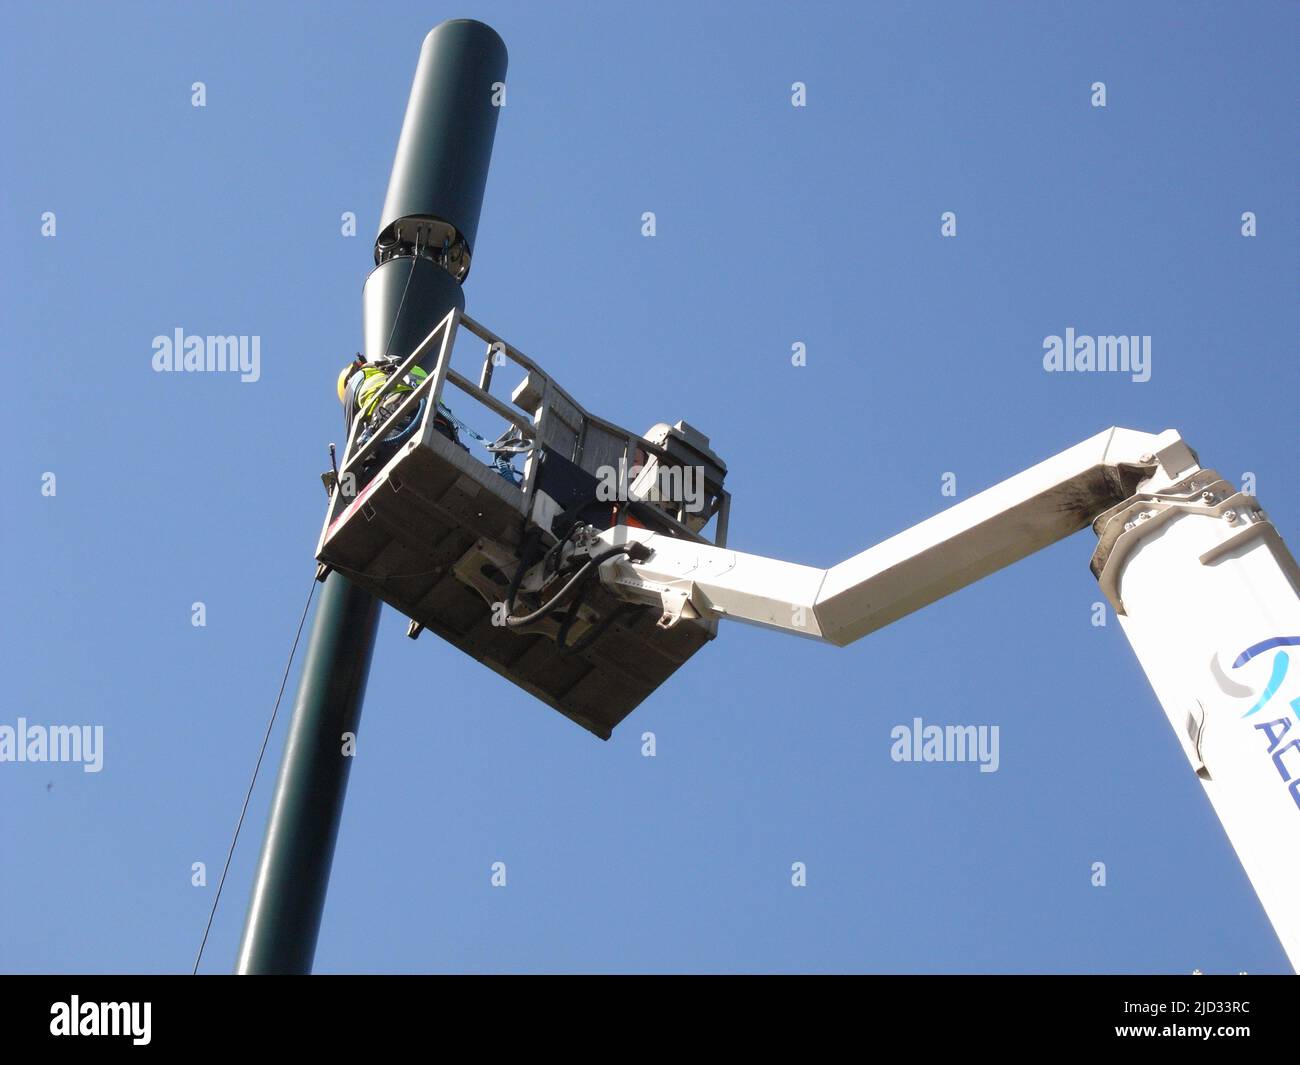 Un trabajador que utiliza un selector de cerezas mientras se instala un mástil de telecomunicaciones 5g Londres Foto de stock